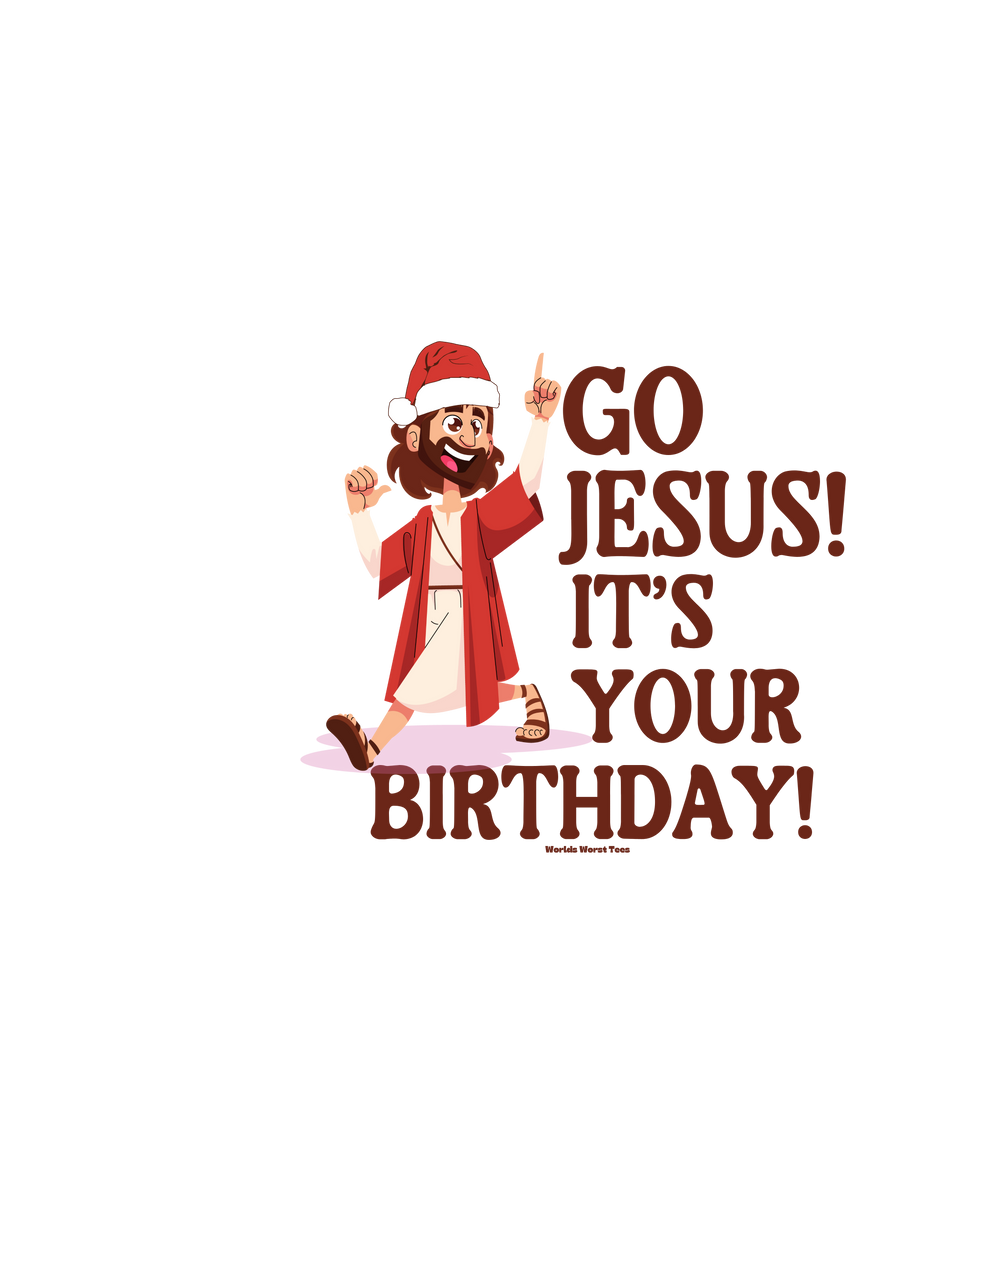 Go Jesus it's your birthday Tee